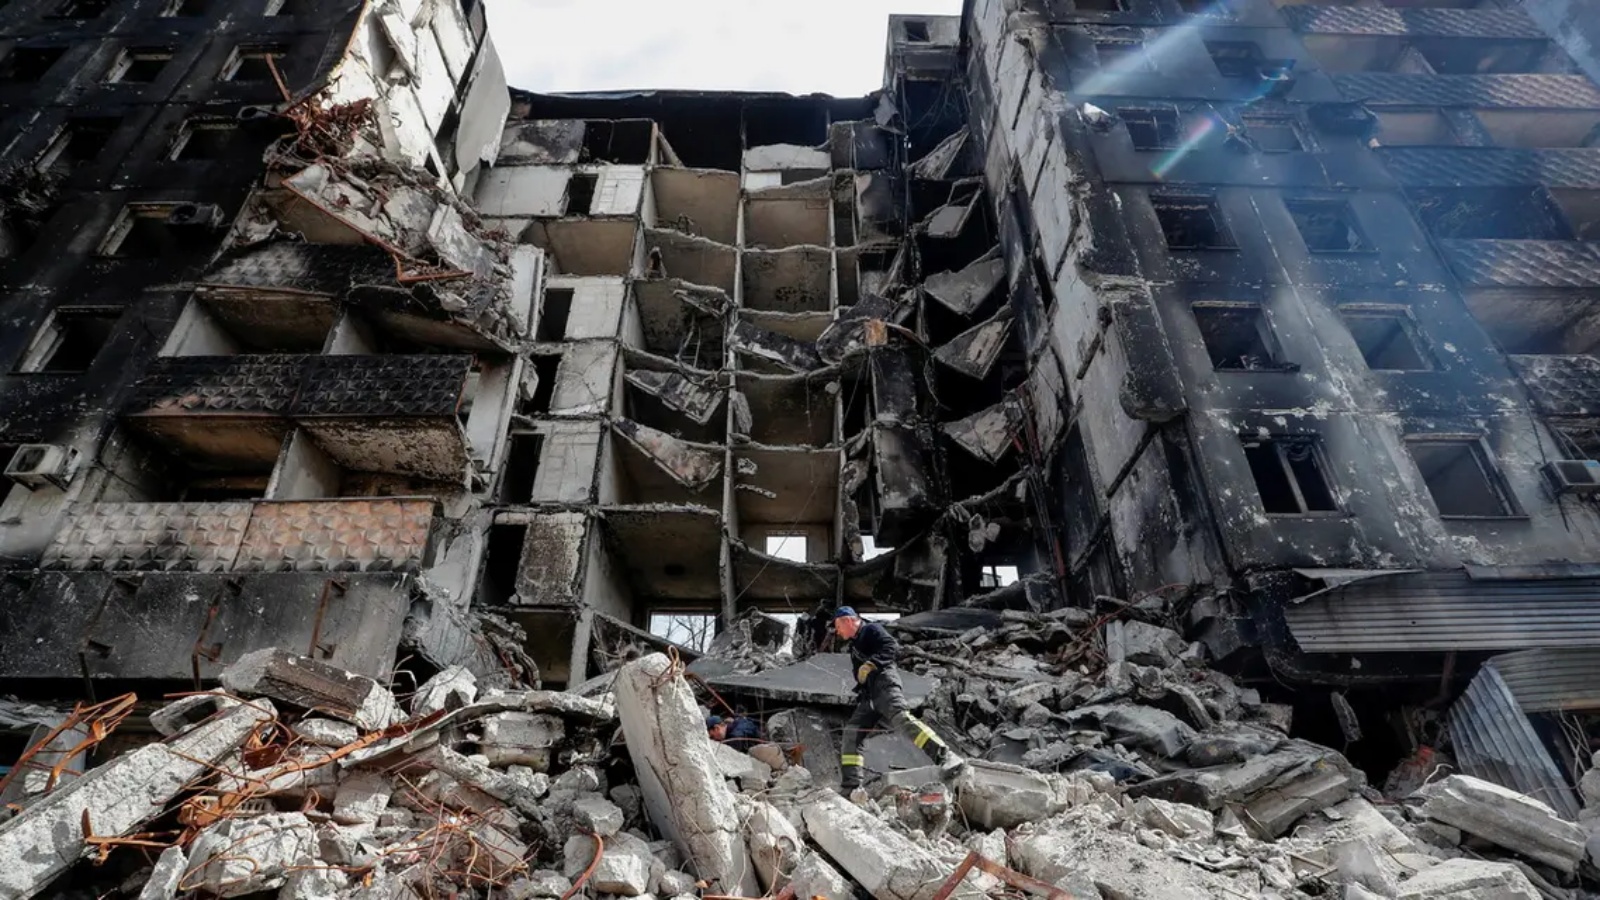 عمال الطوارئ يزيلون حطام مبنى دمر خلال الصراع الأوكراني الروسي، في مدينة ماريوبول الساحلية الجنوبية، أوكرانيا، 10 أبريل 2022.